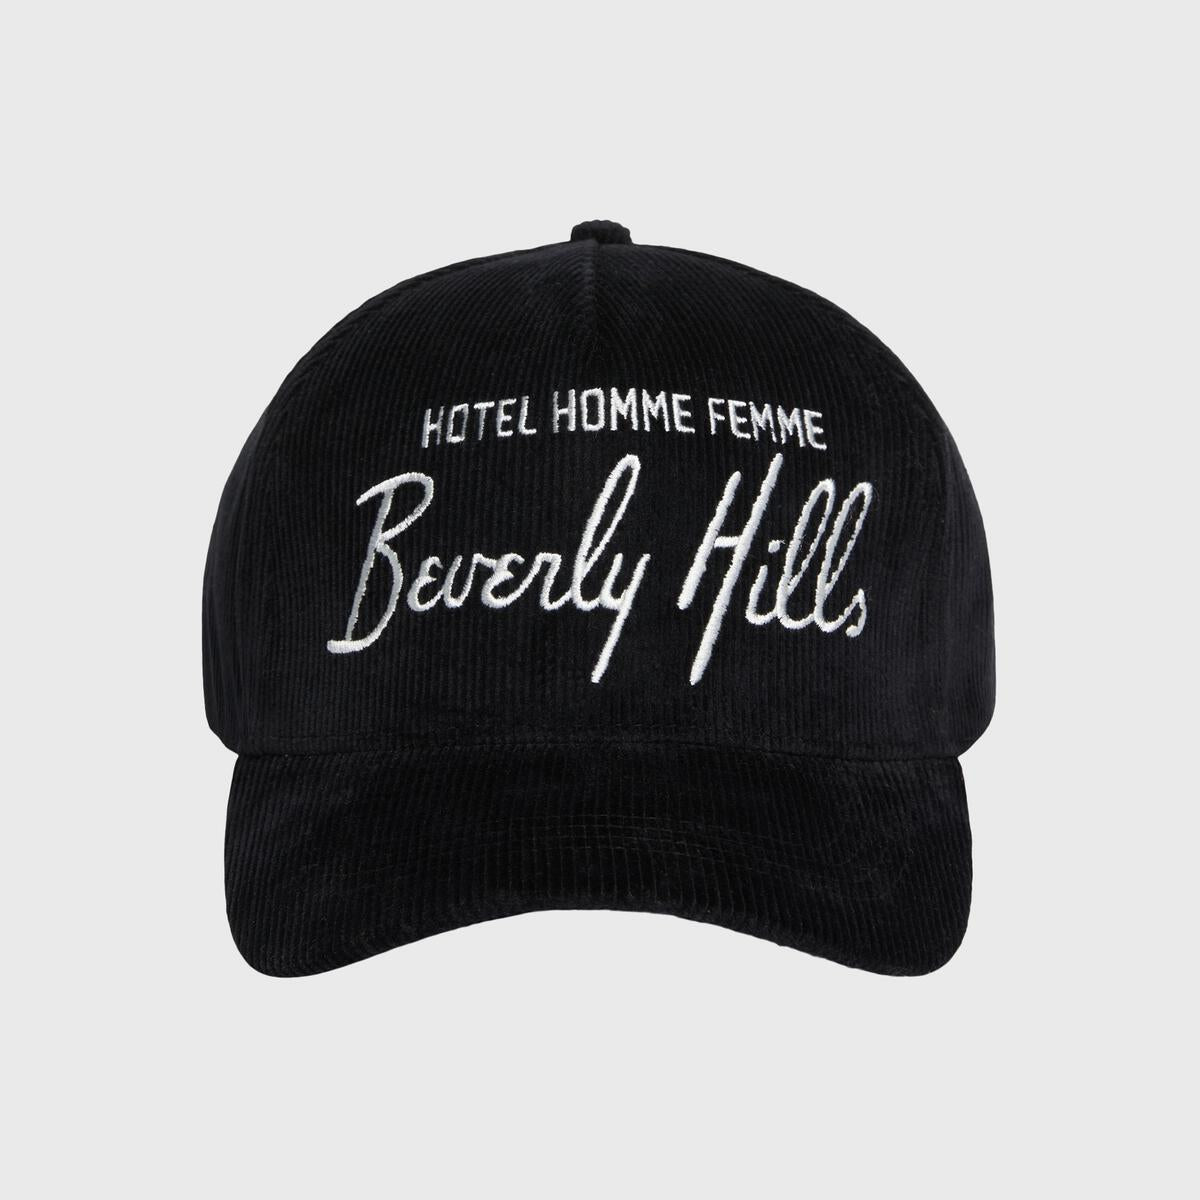 Homme Femme Hotel Corduroy Hat - Black